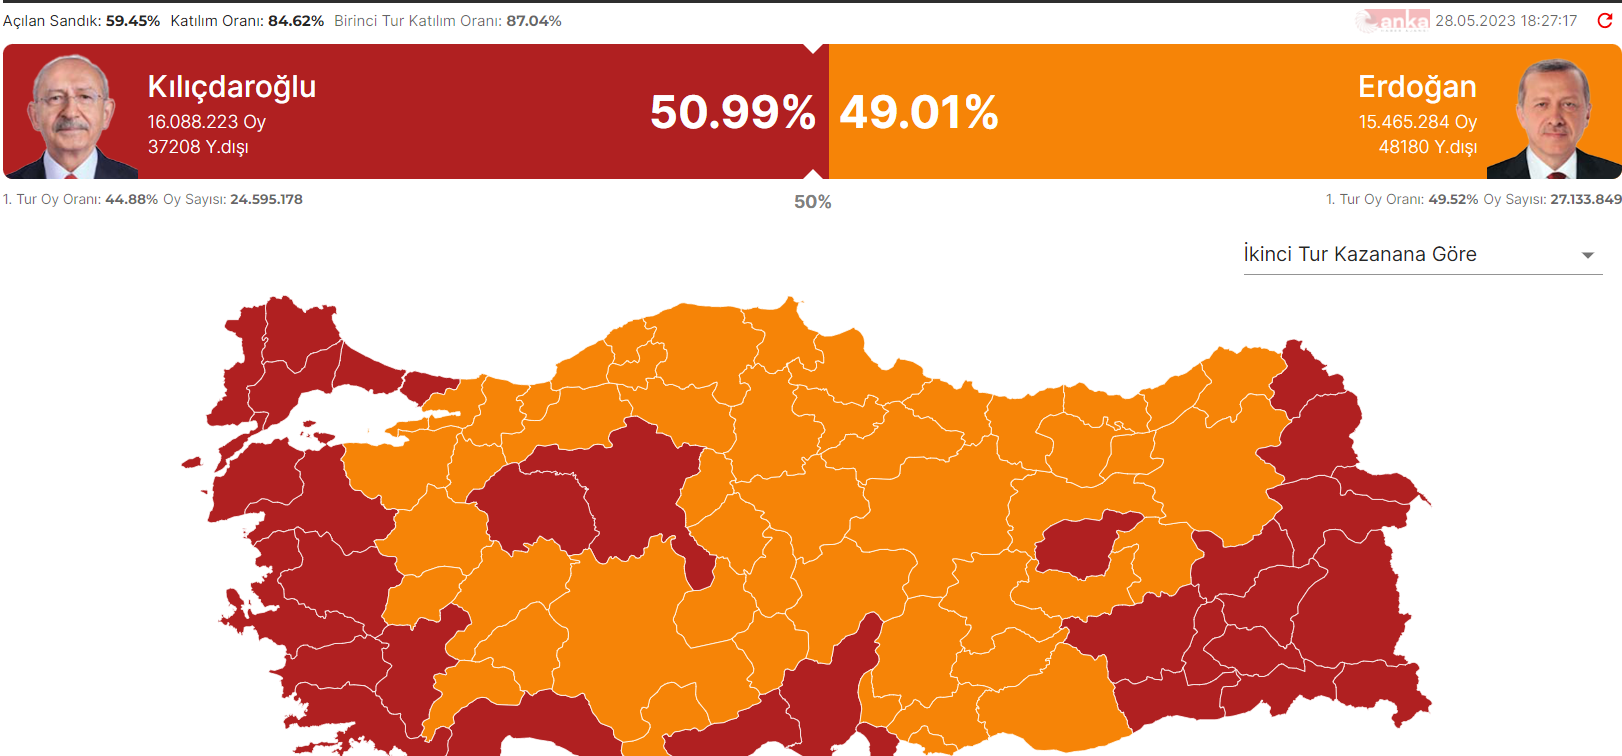 Победа Эрдогана на выборах 2023. Эрдоган выиграл выборы. 2023 Turkish presidential election. Эрдоган и Кылычдароглу. Явка по стране 2024